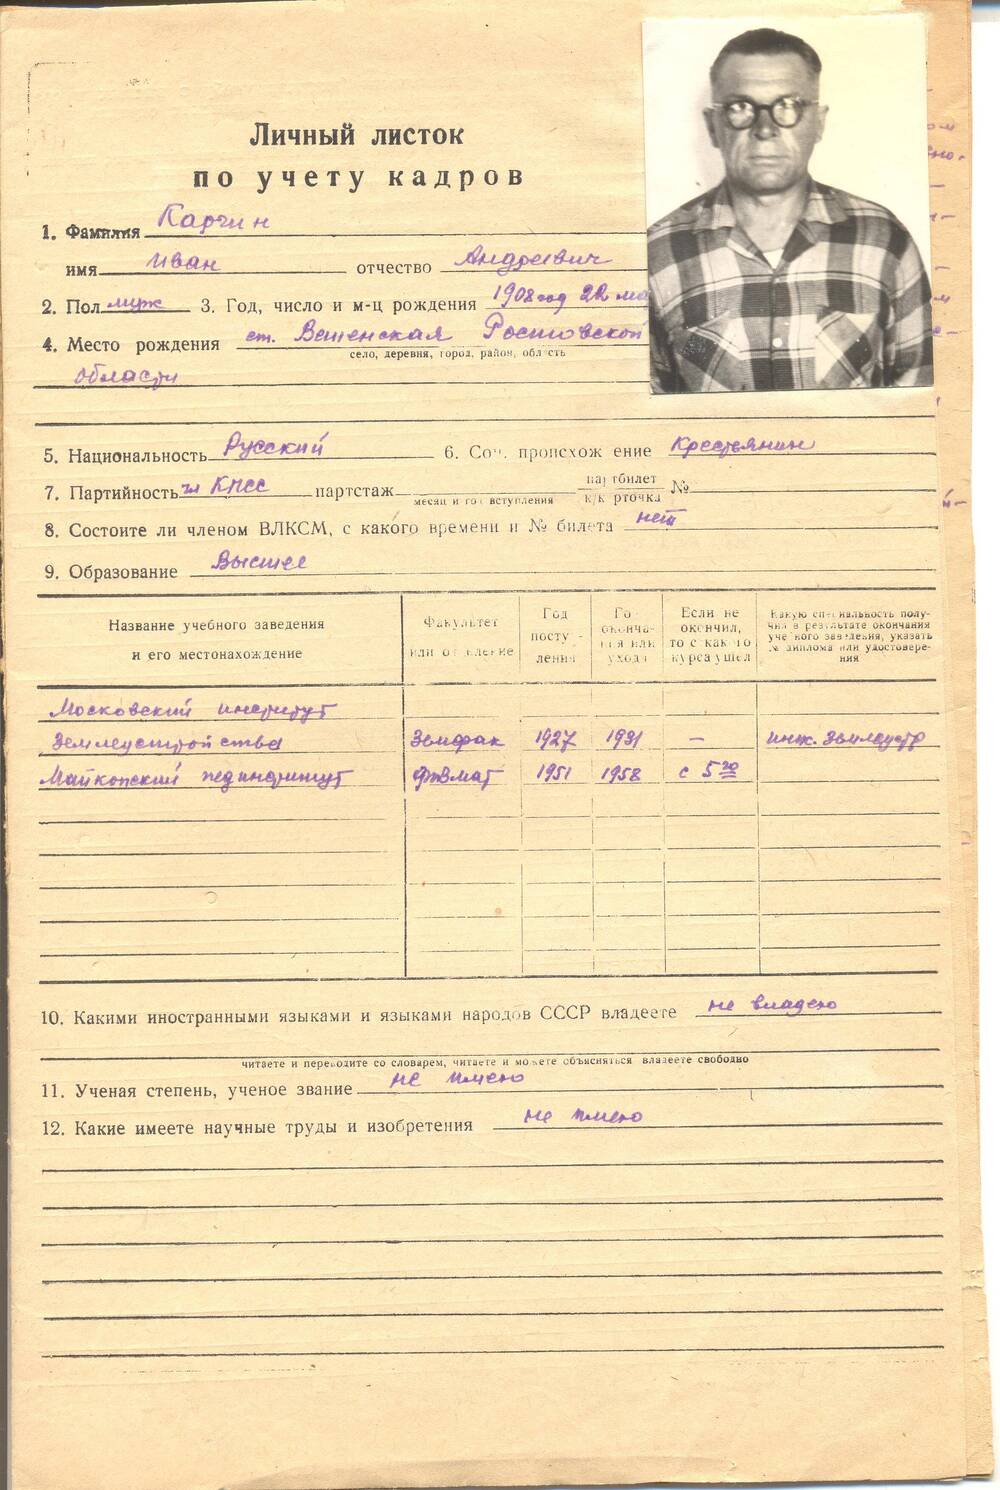 Личный листок по учету кадров Каргина И.А. (7 листов, на бланках)